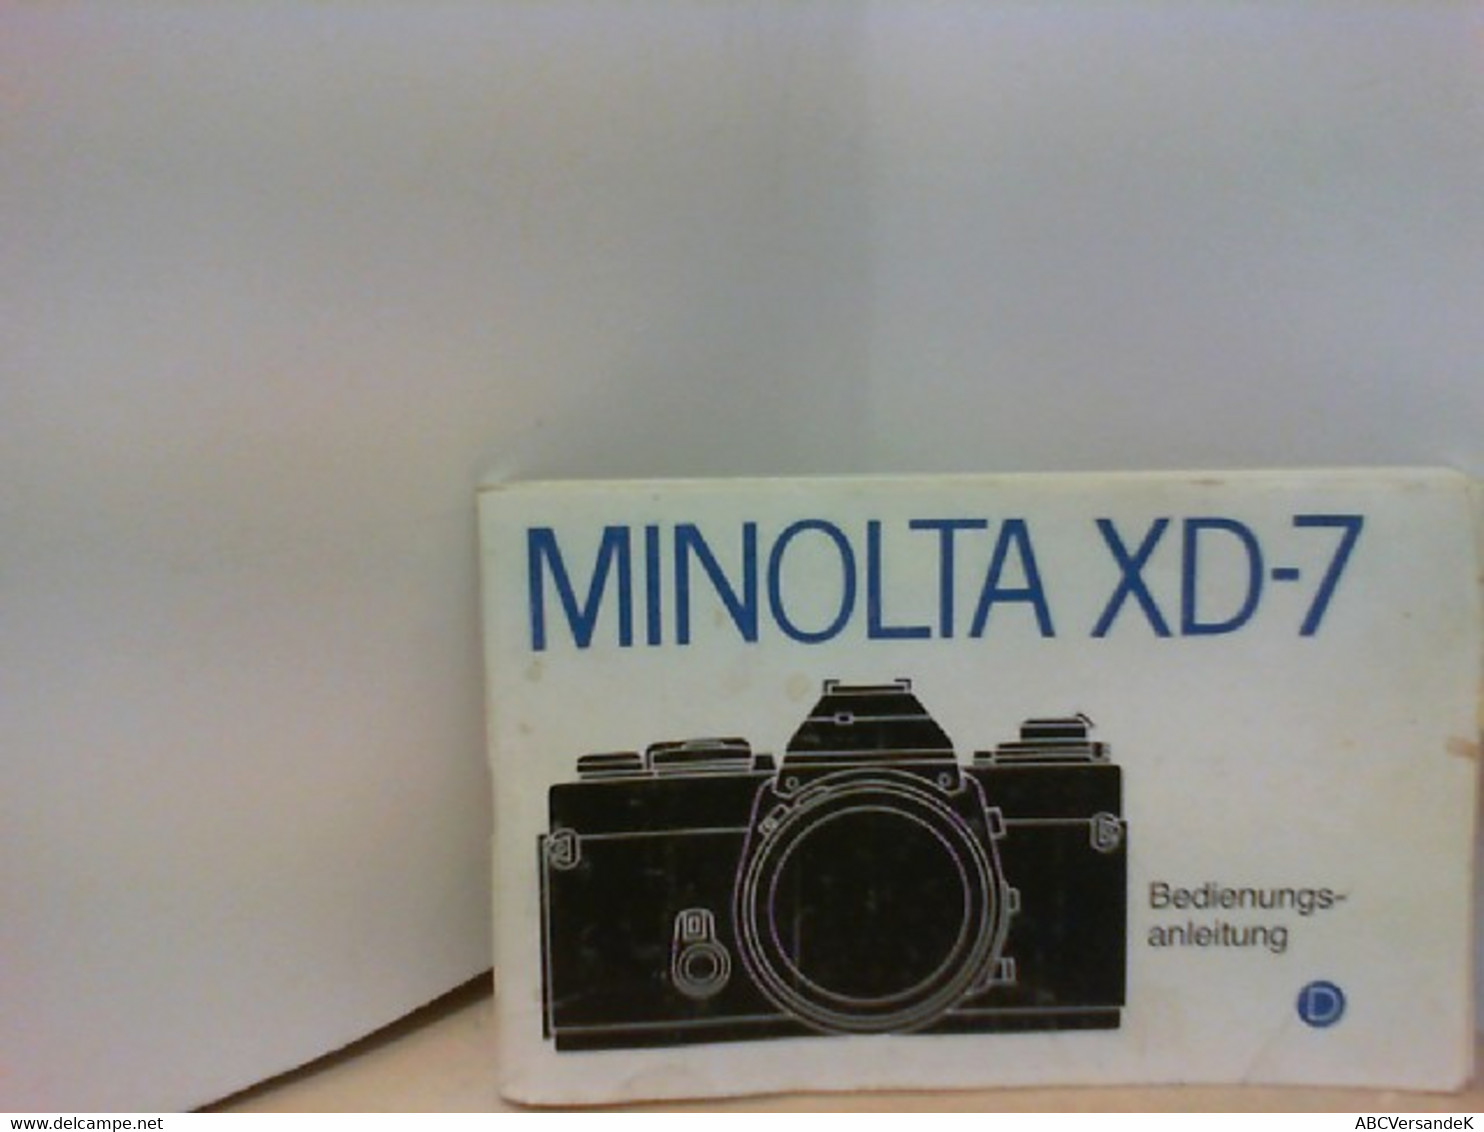 MINOLTA XD - 7 Bedienungsanleitung - Photographie